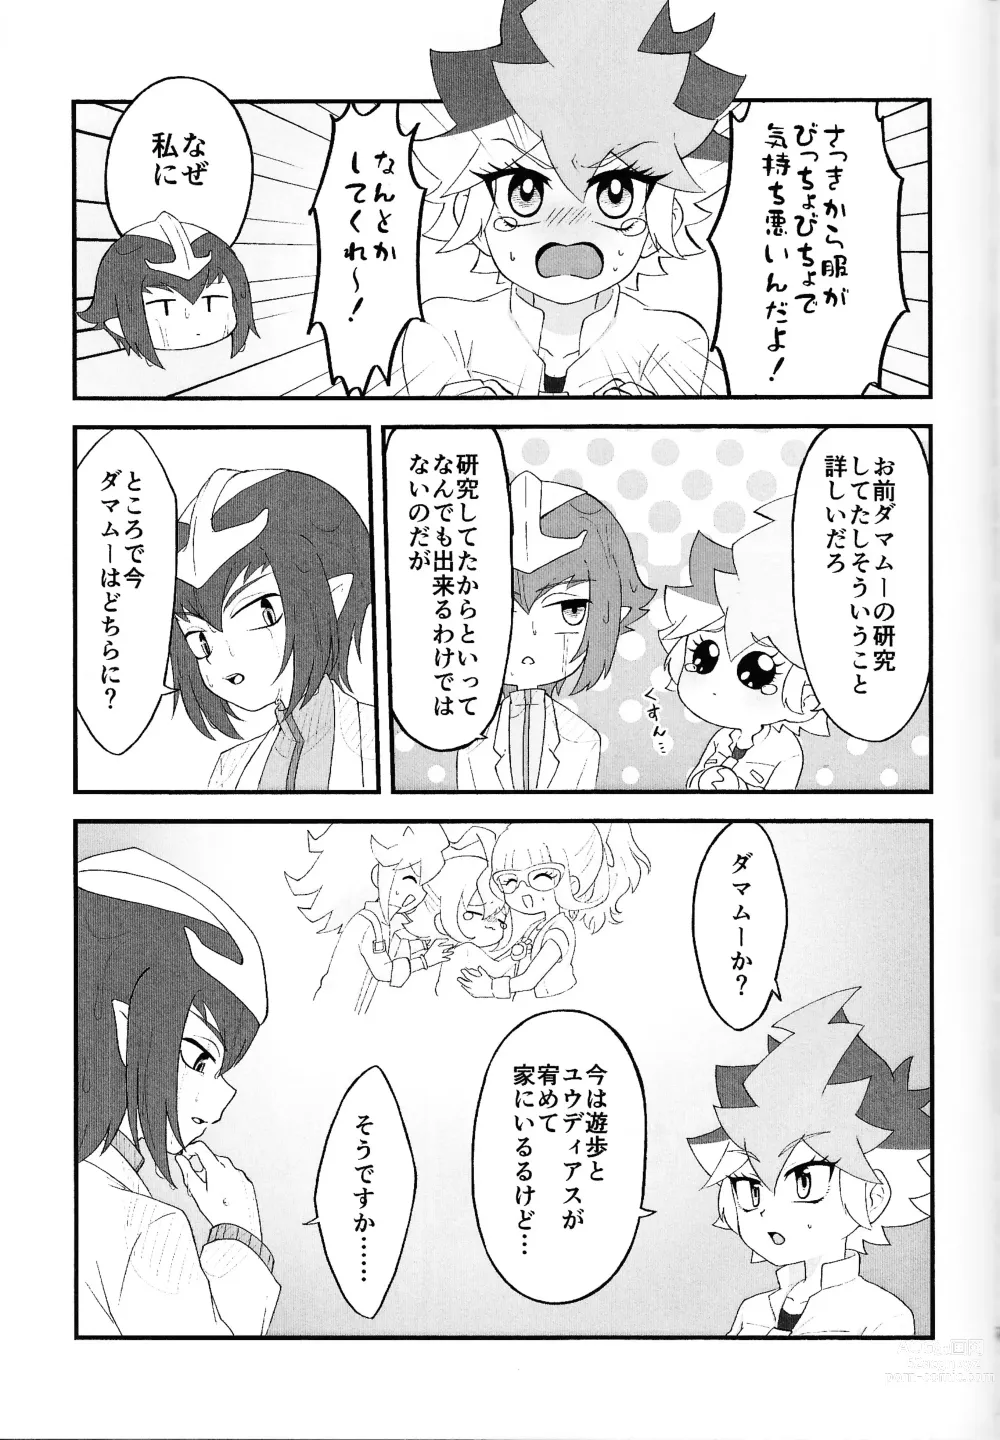 Page 6 of doujinshi Pandoranohako ka kindan no kajitsu ka